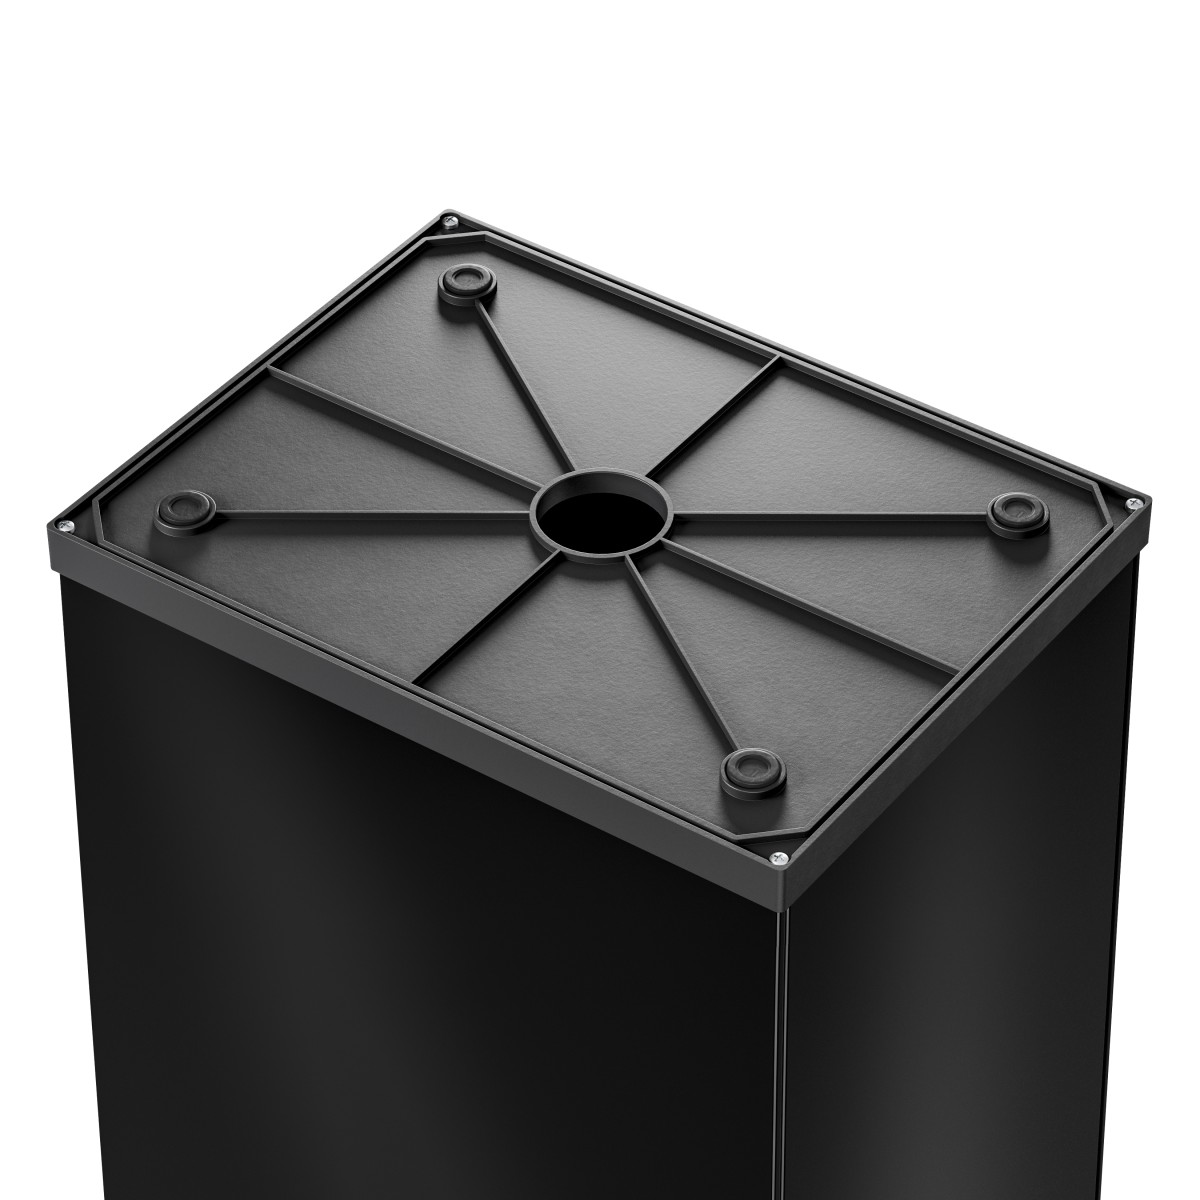 פח אשפה מלבני 52 ליטר למטבחים ומשרדים Big-Box Swing XL HAILO - צבע שחור